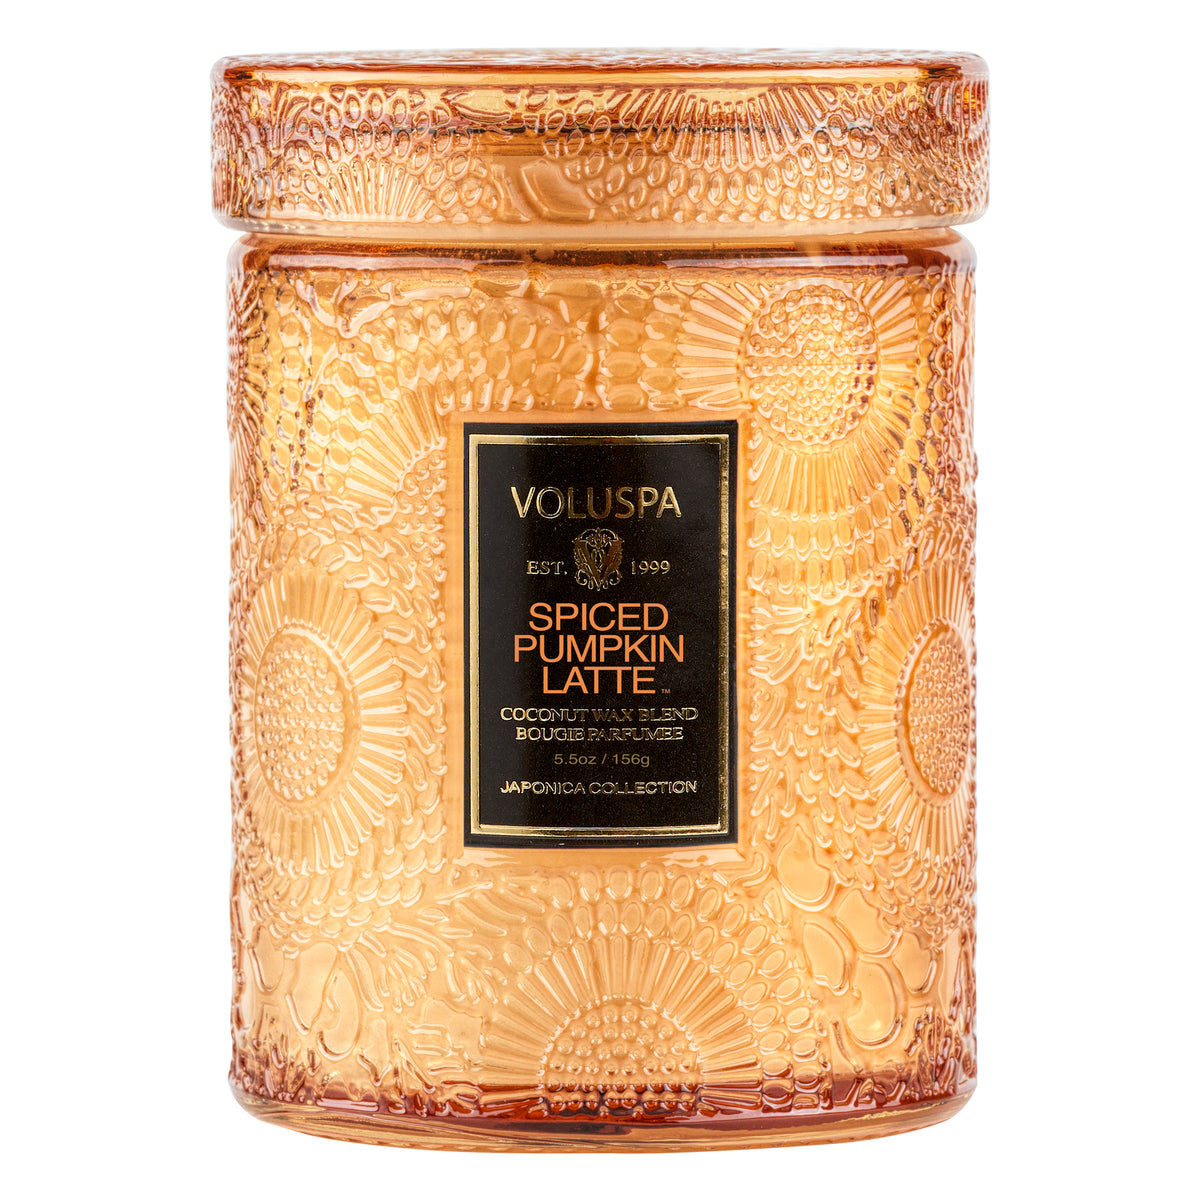 Voluspa Spiced Pumpkin Jar Candle